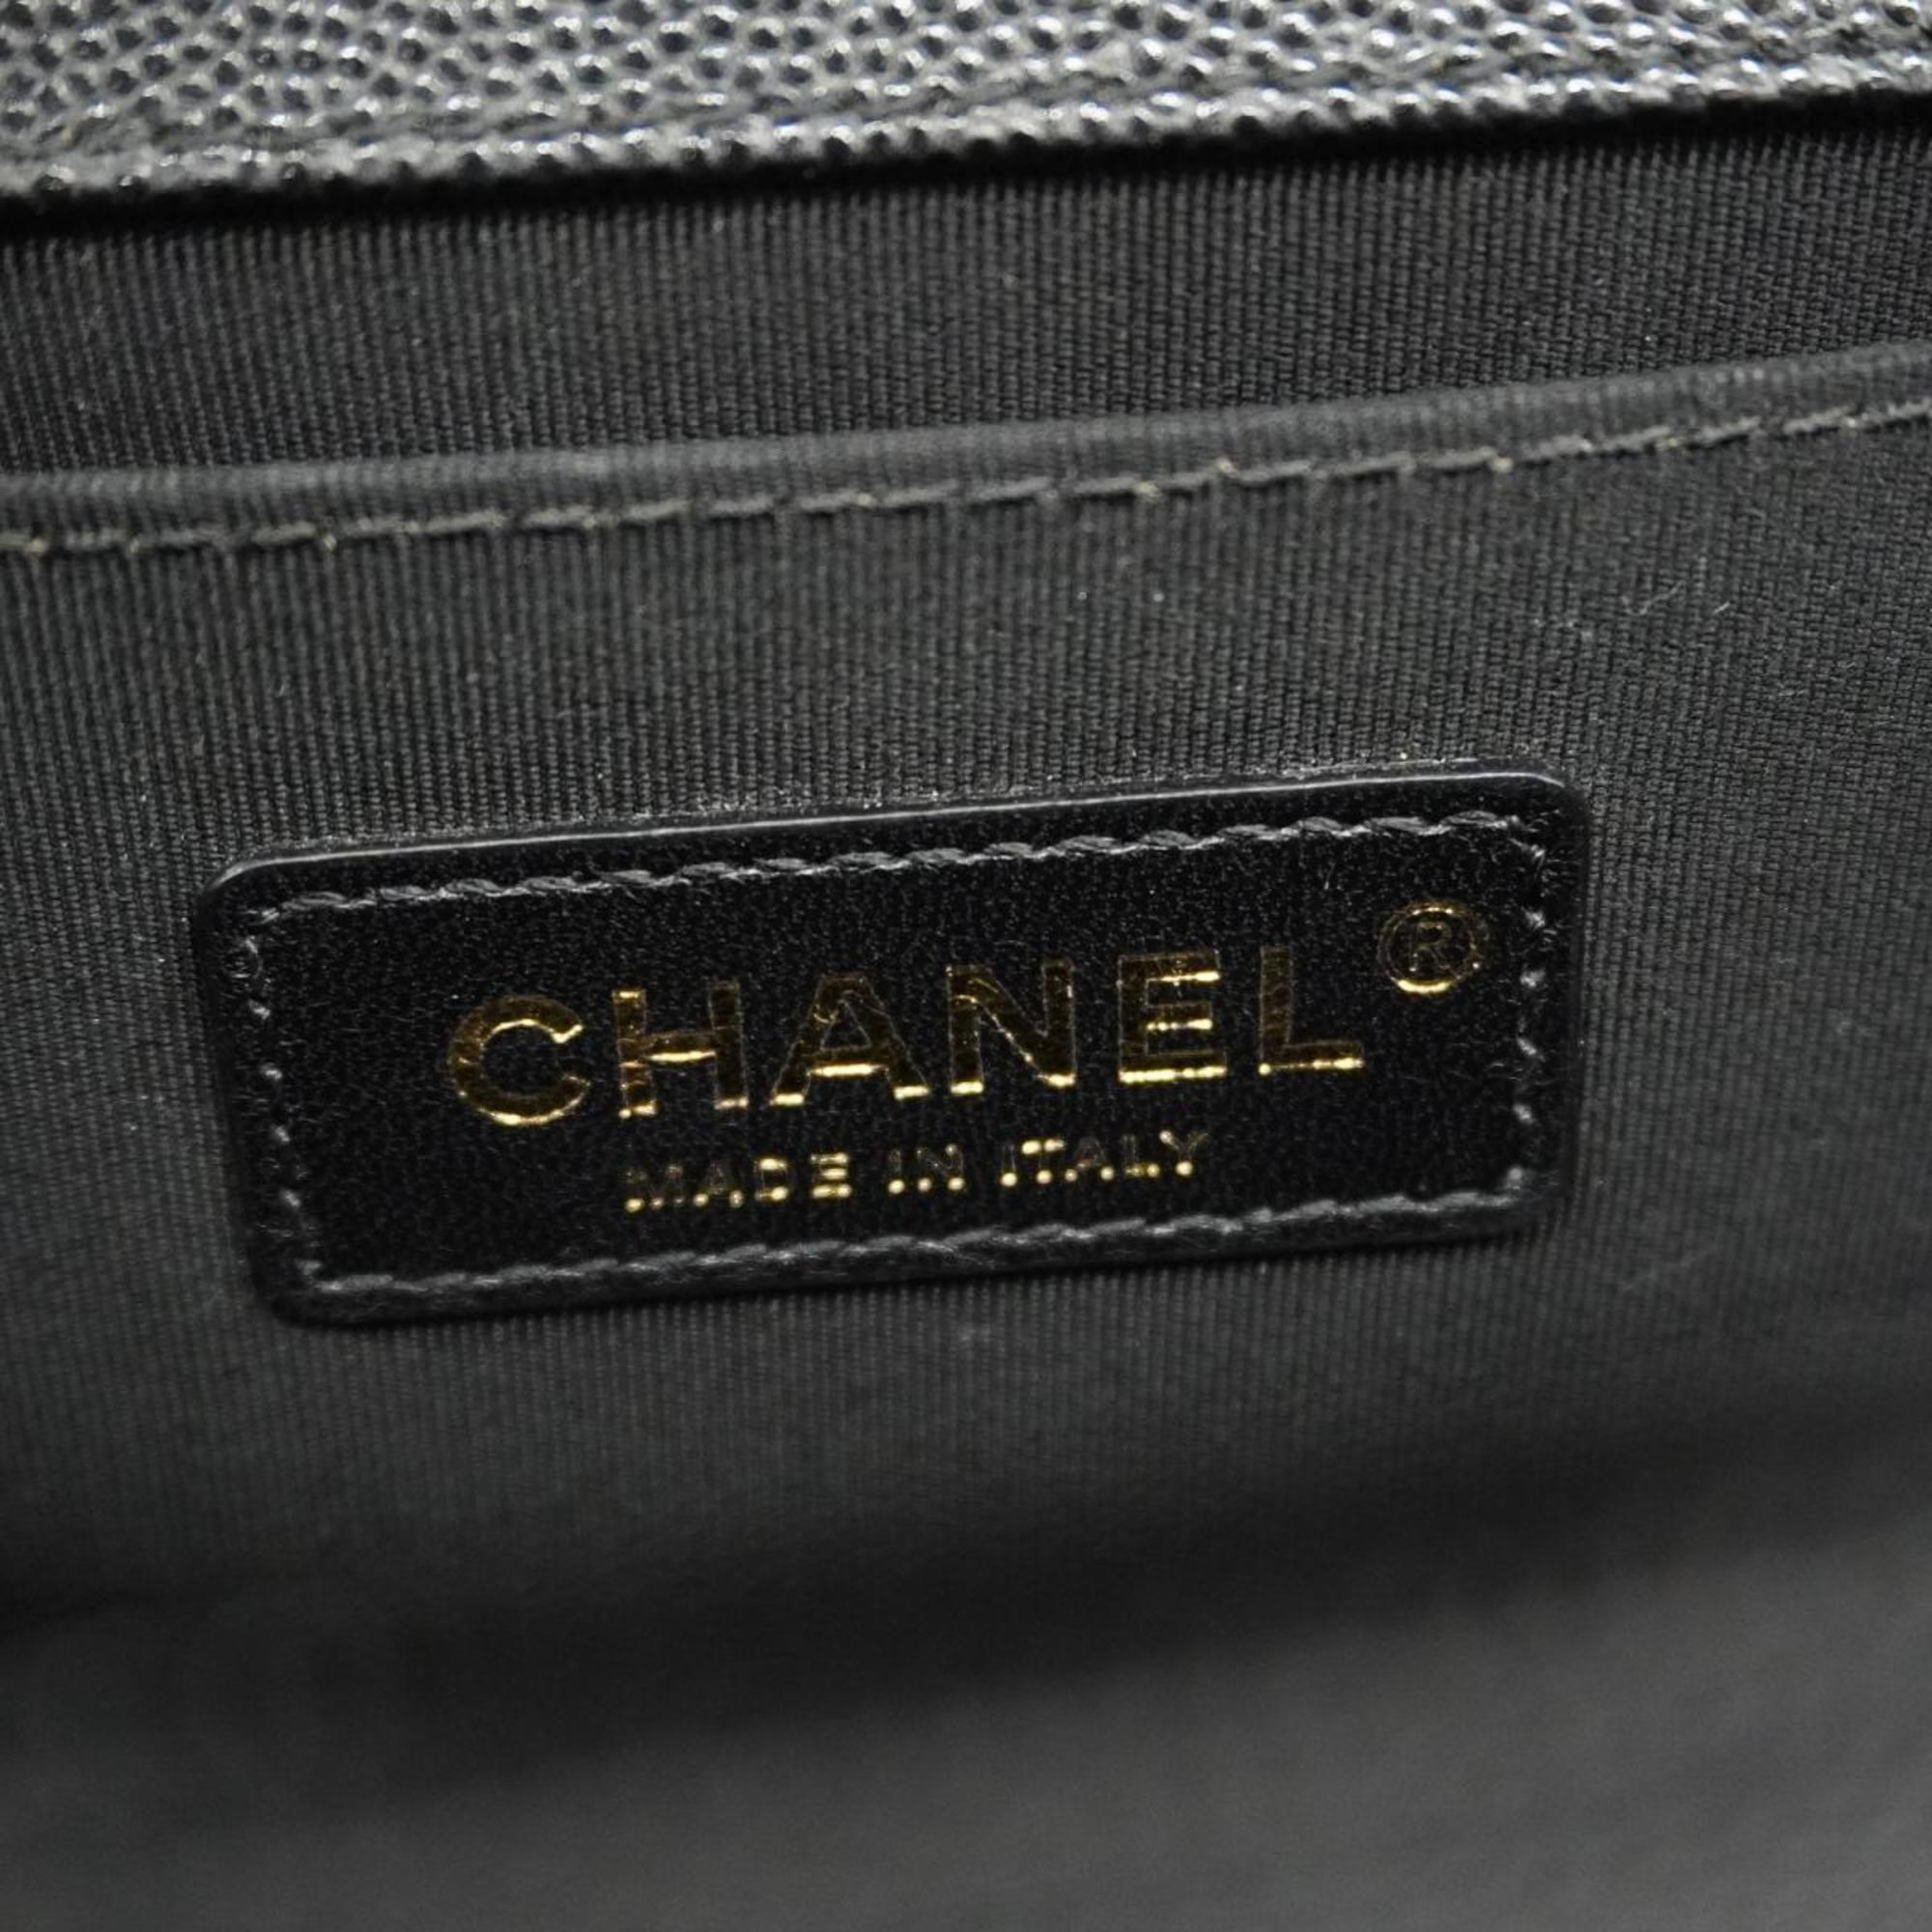 シャネル(Chanel) シャネル ショルダーバッグ ボーイシャネル チェーンショルダー キャビアスキン ブラック   レディース